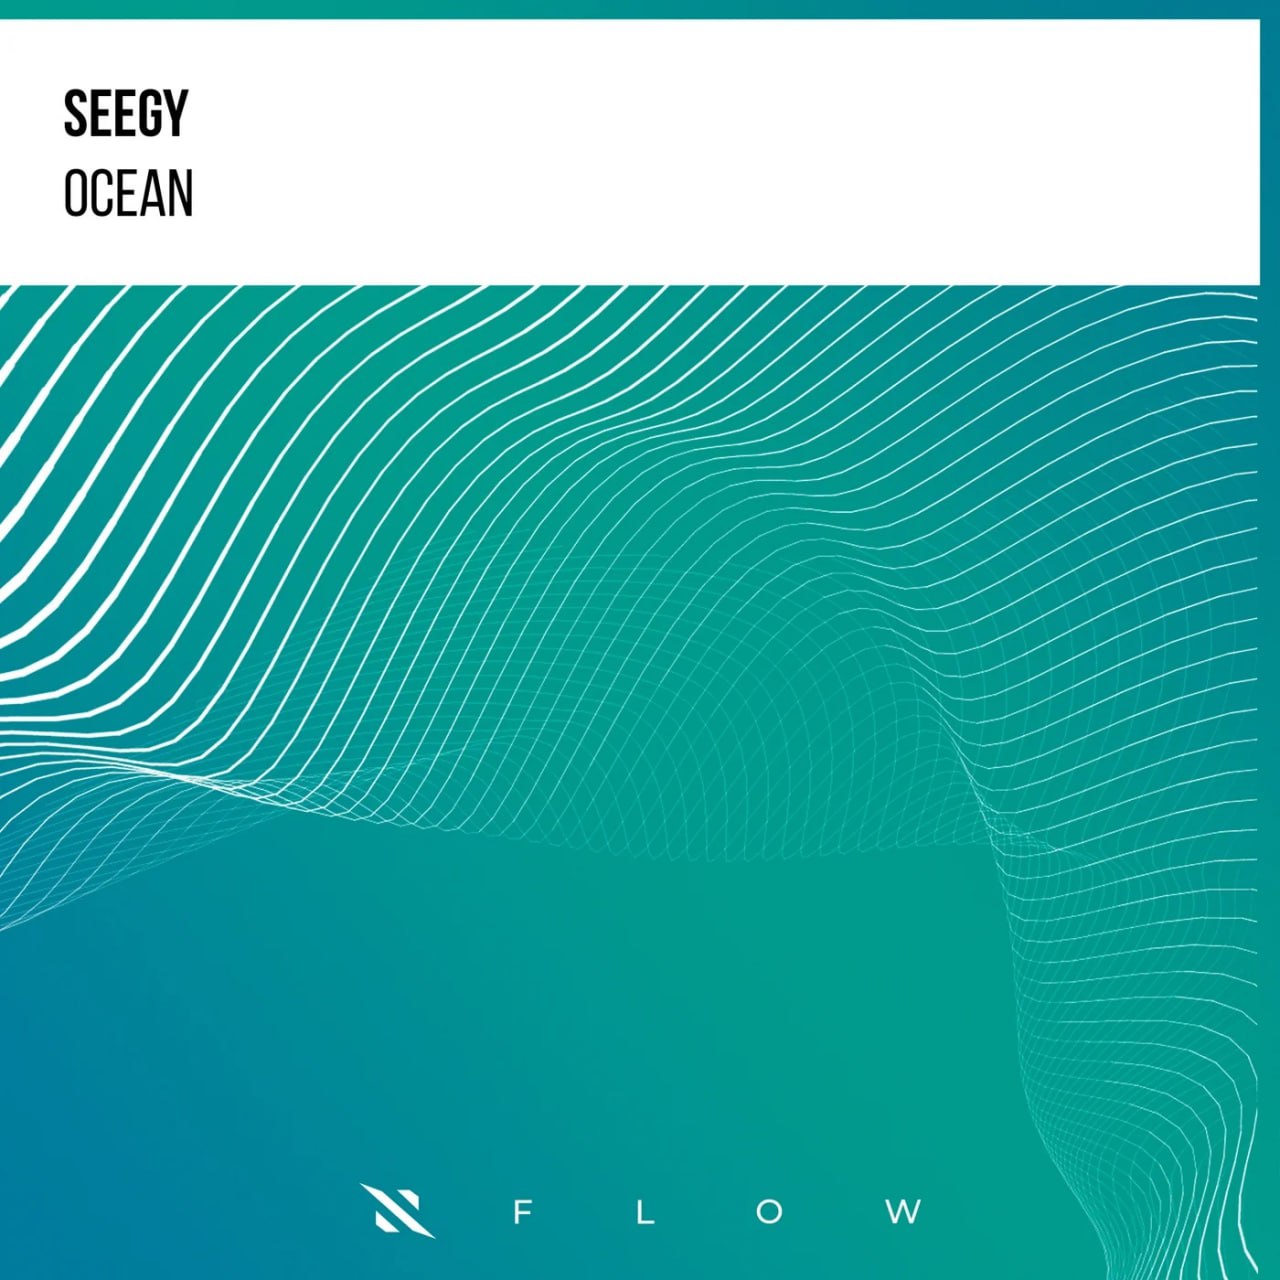 Seegy - Ocean (Extended Mix)